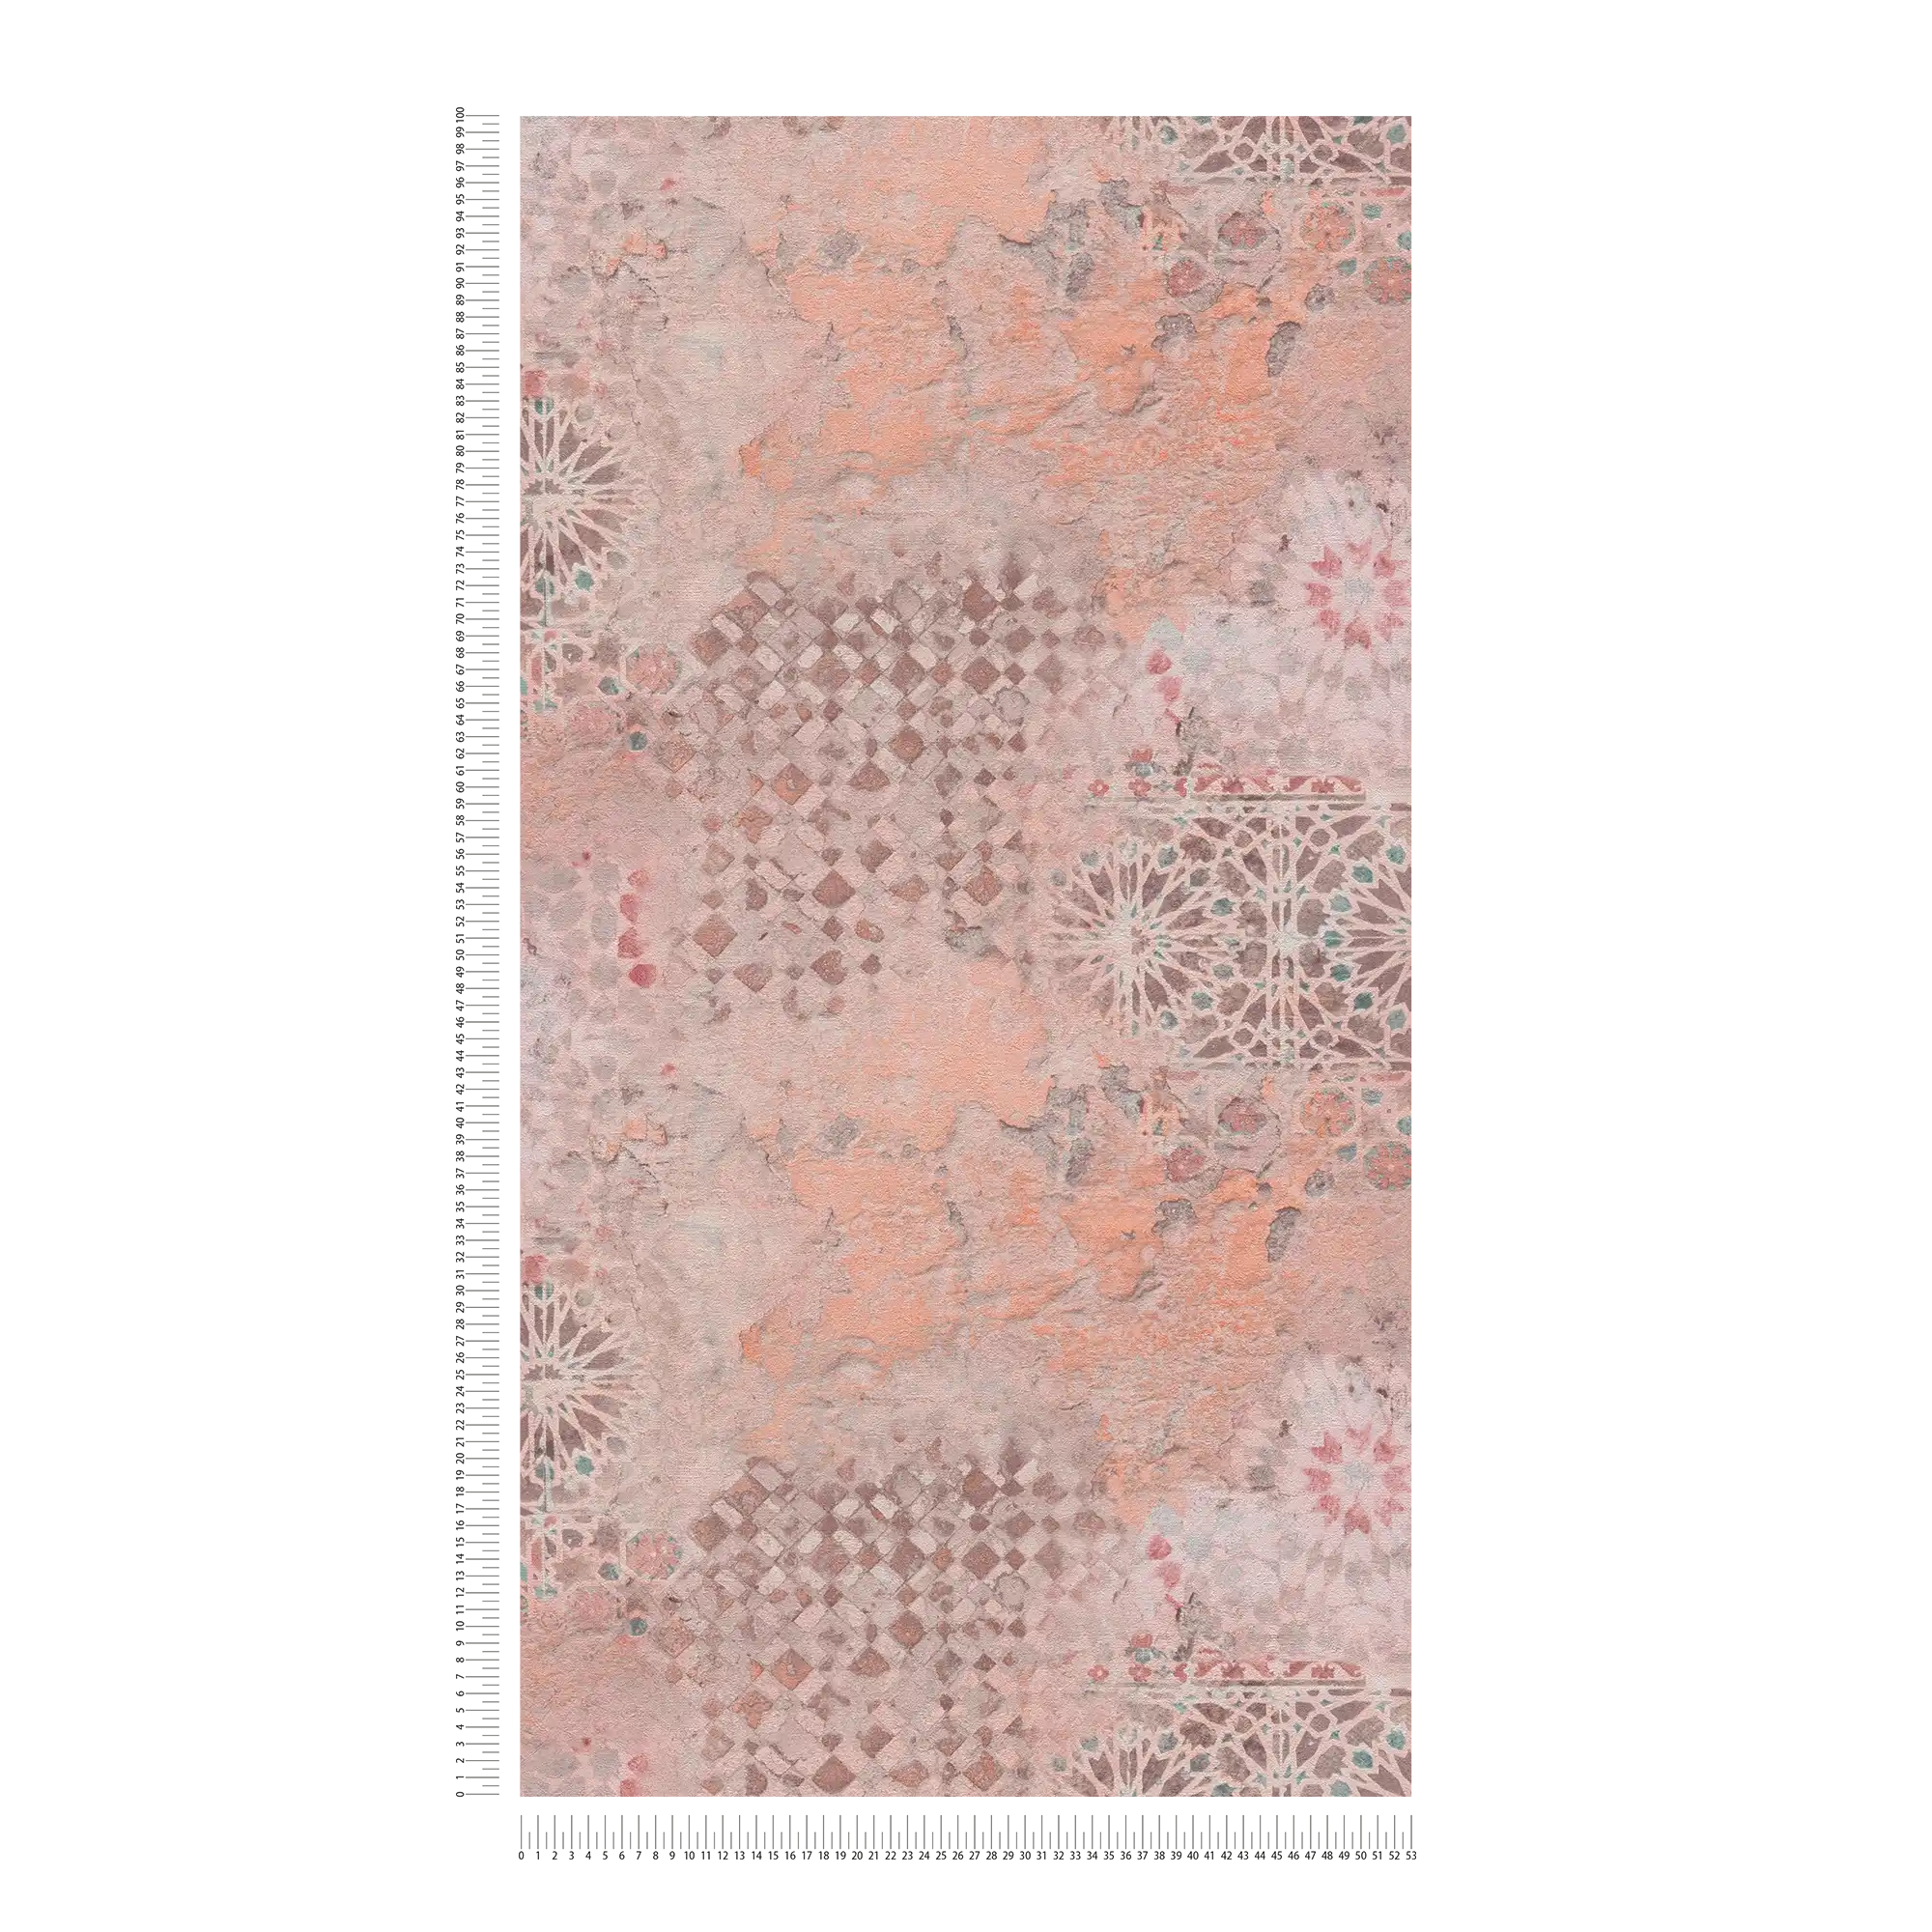             Papel pintado no tejido de colores con diseño de mosaico rústico - marrón, gris, naranja
        